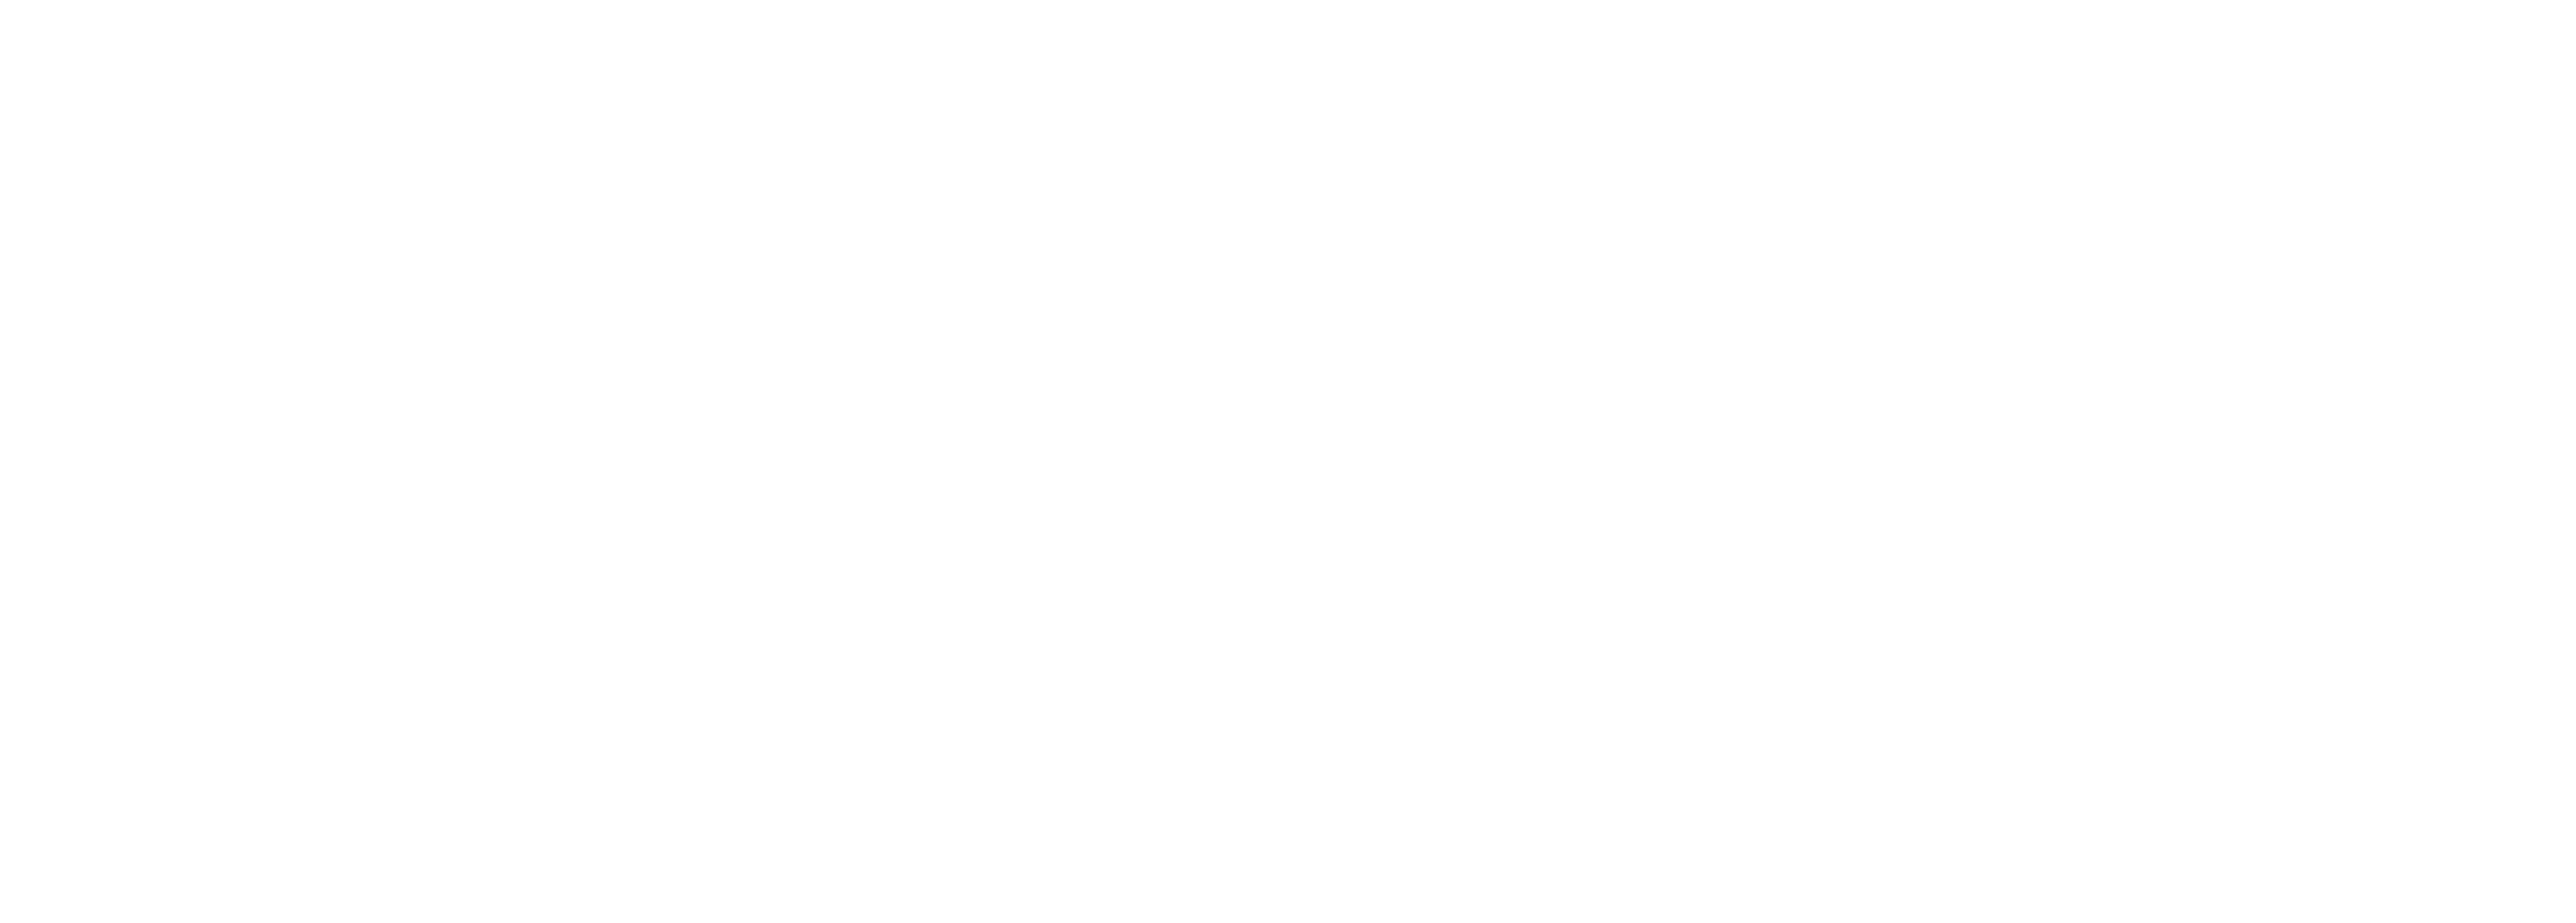 Kpowers